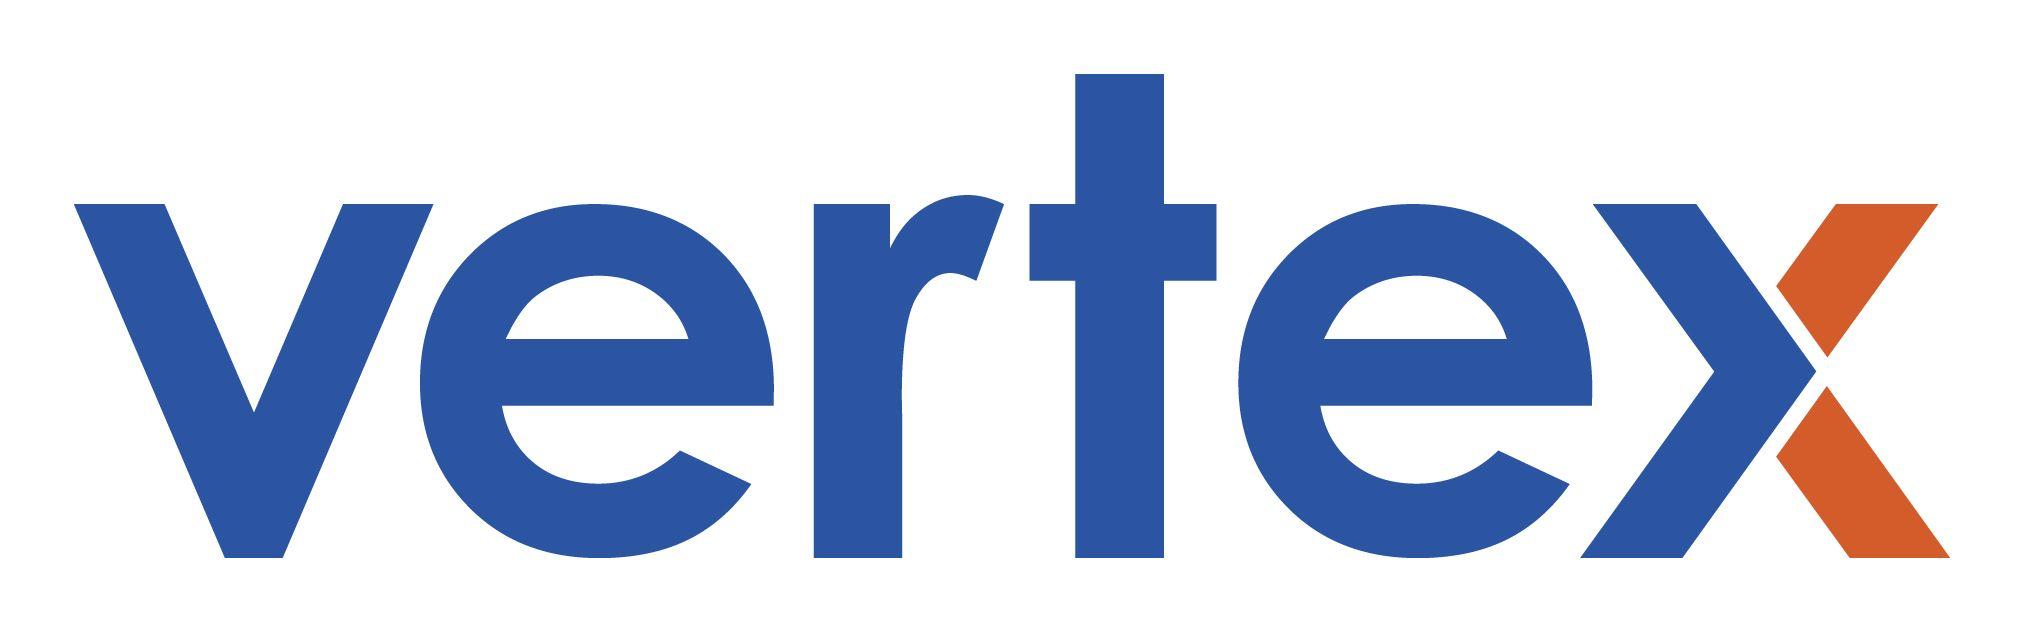 Vertex Logo - Vertex Logos